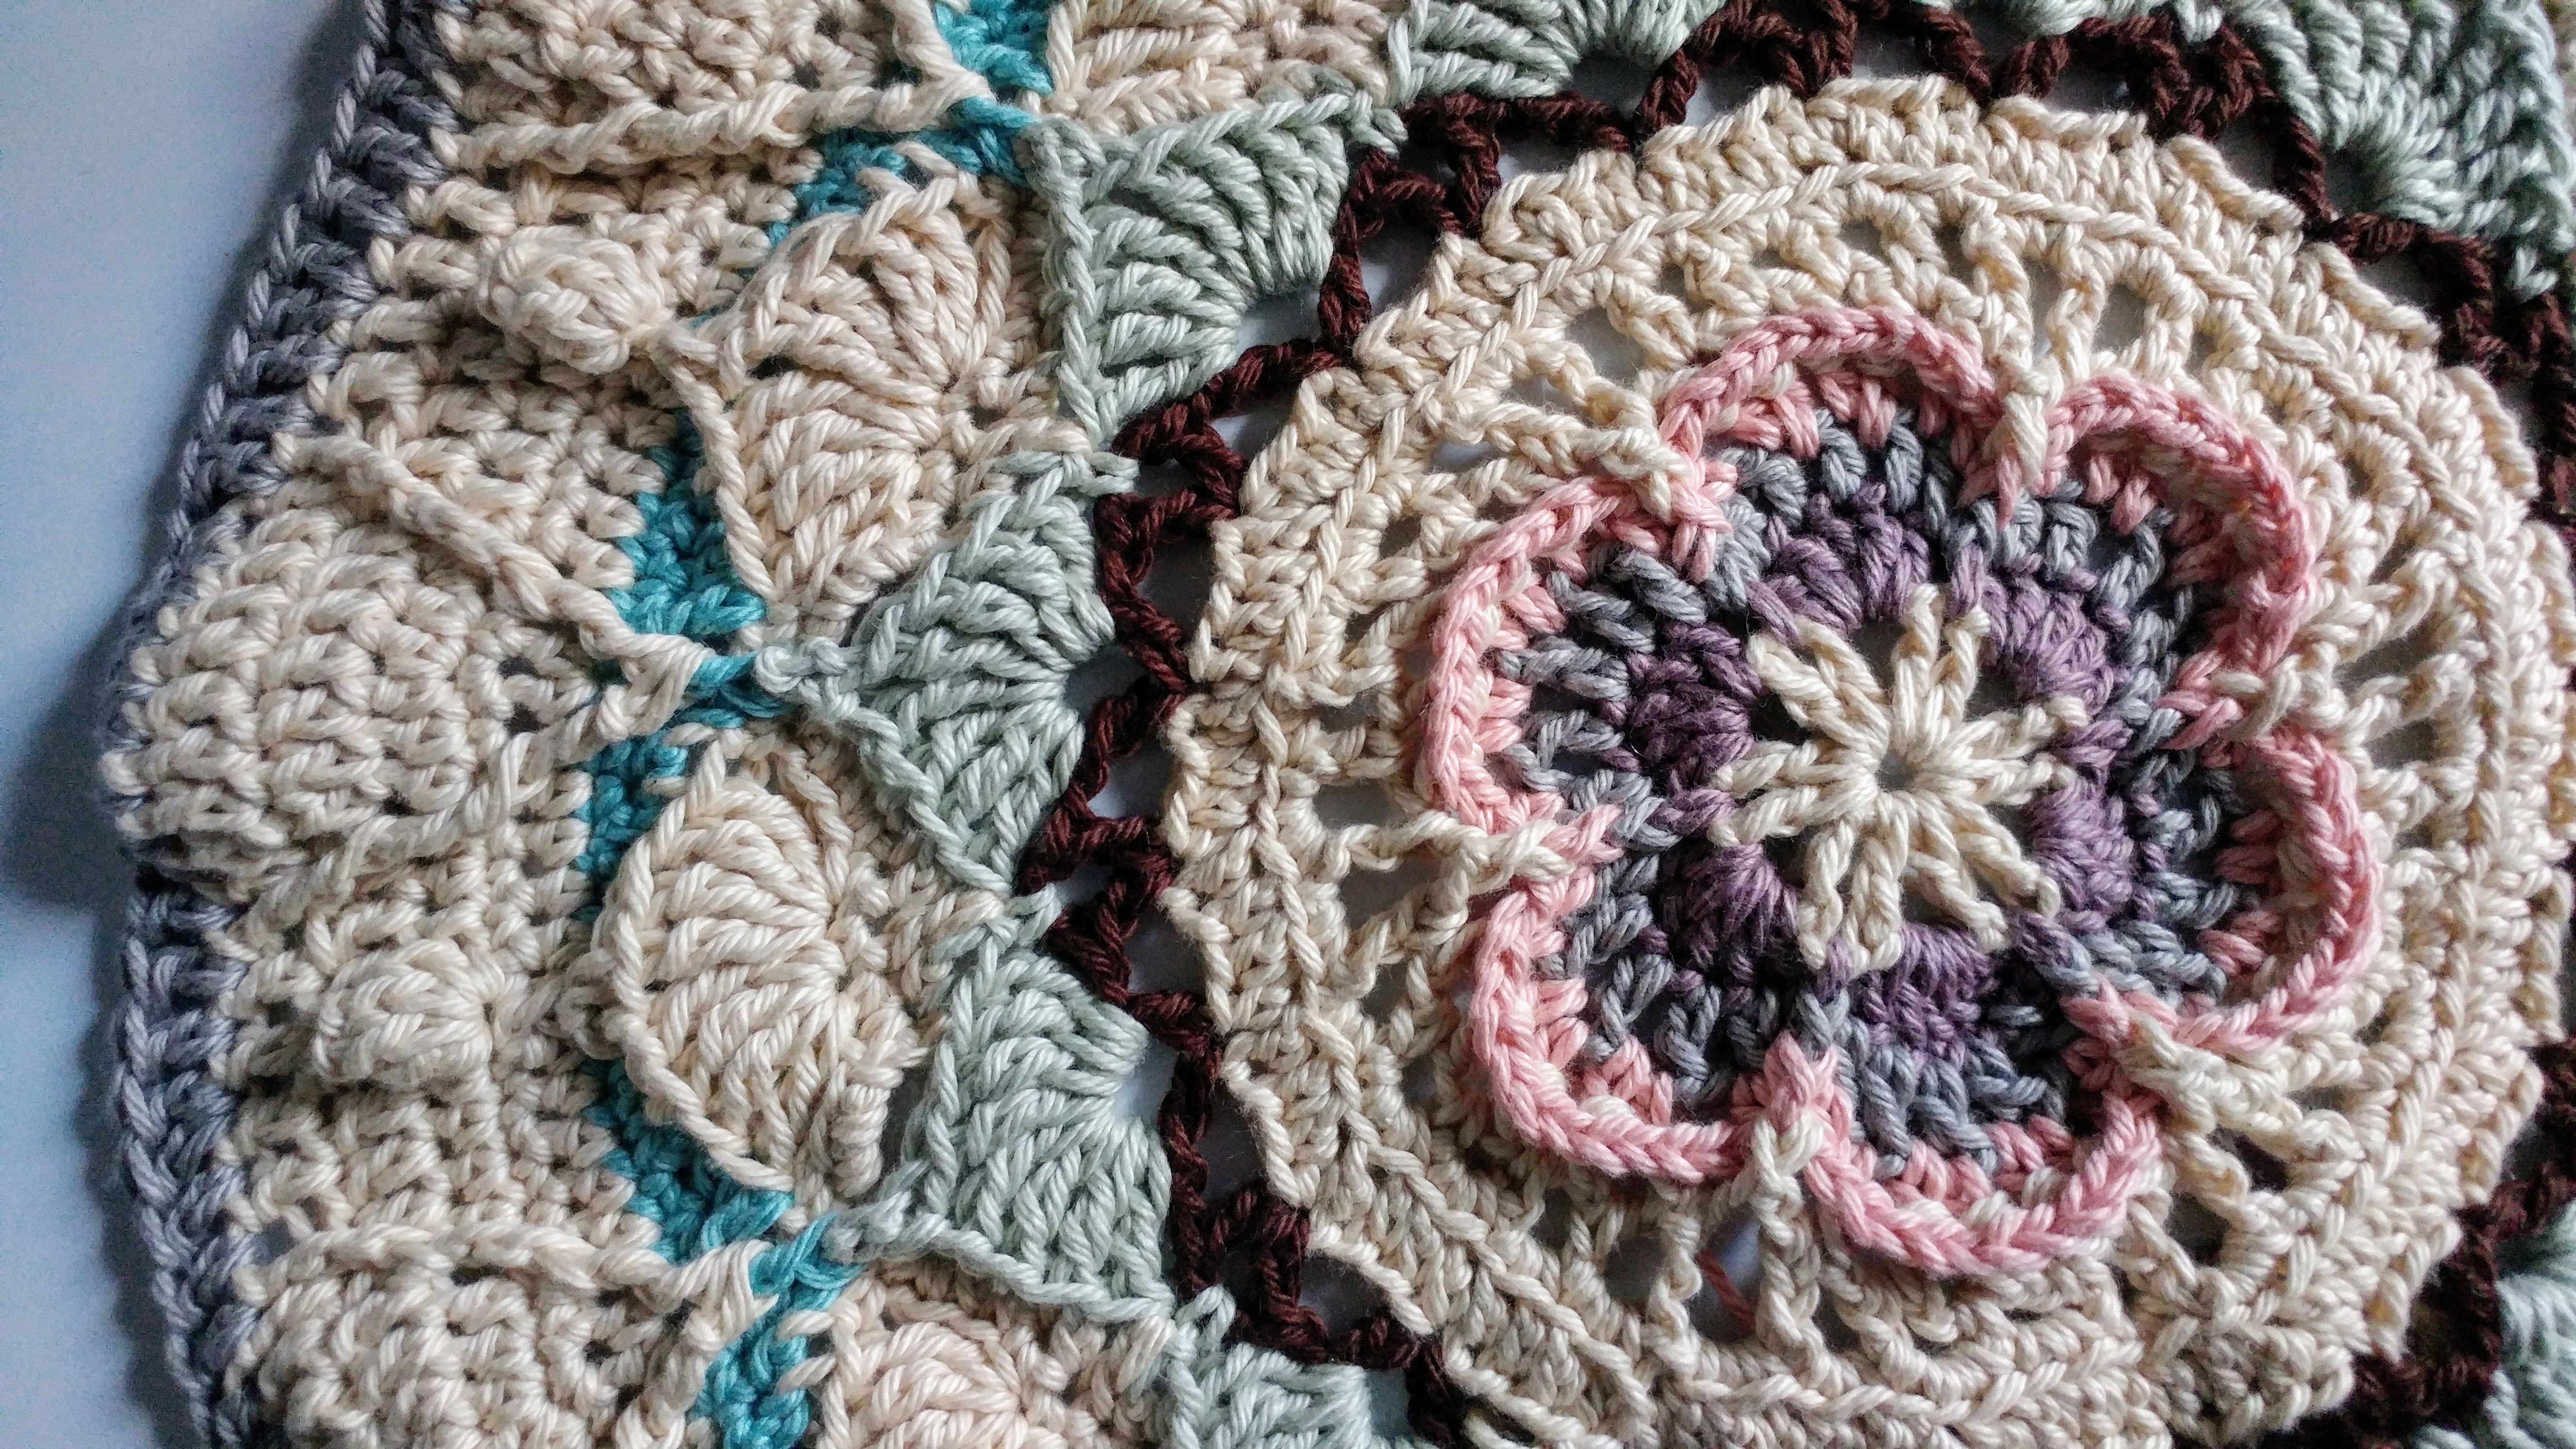 Sophie's Universe crochet blanket, Part 3 â€“ https://www.kimwerker.com/blog